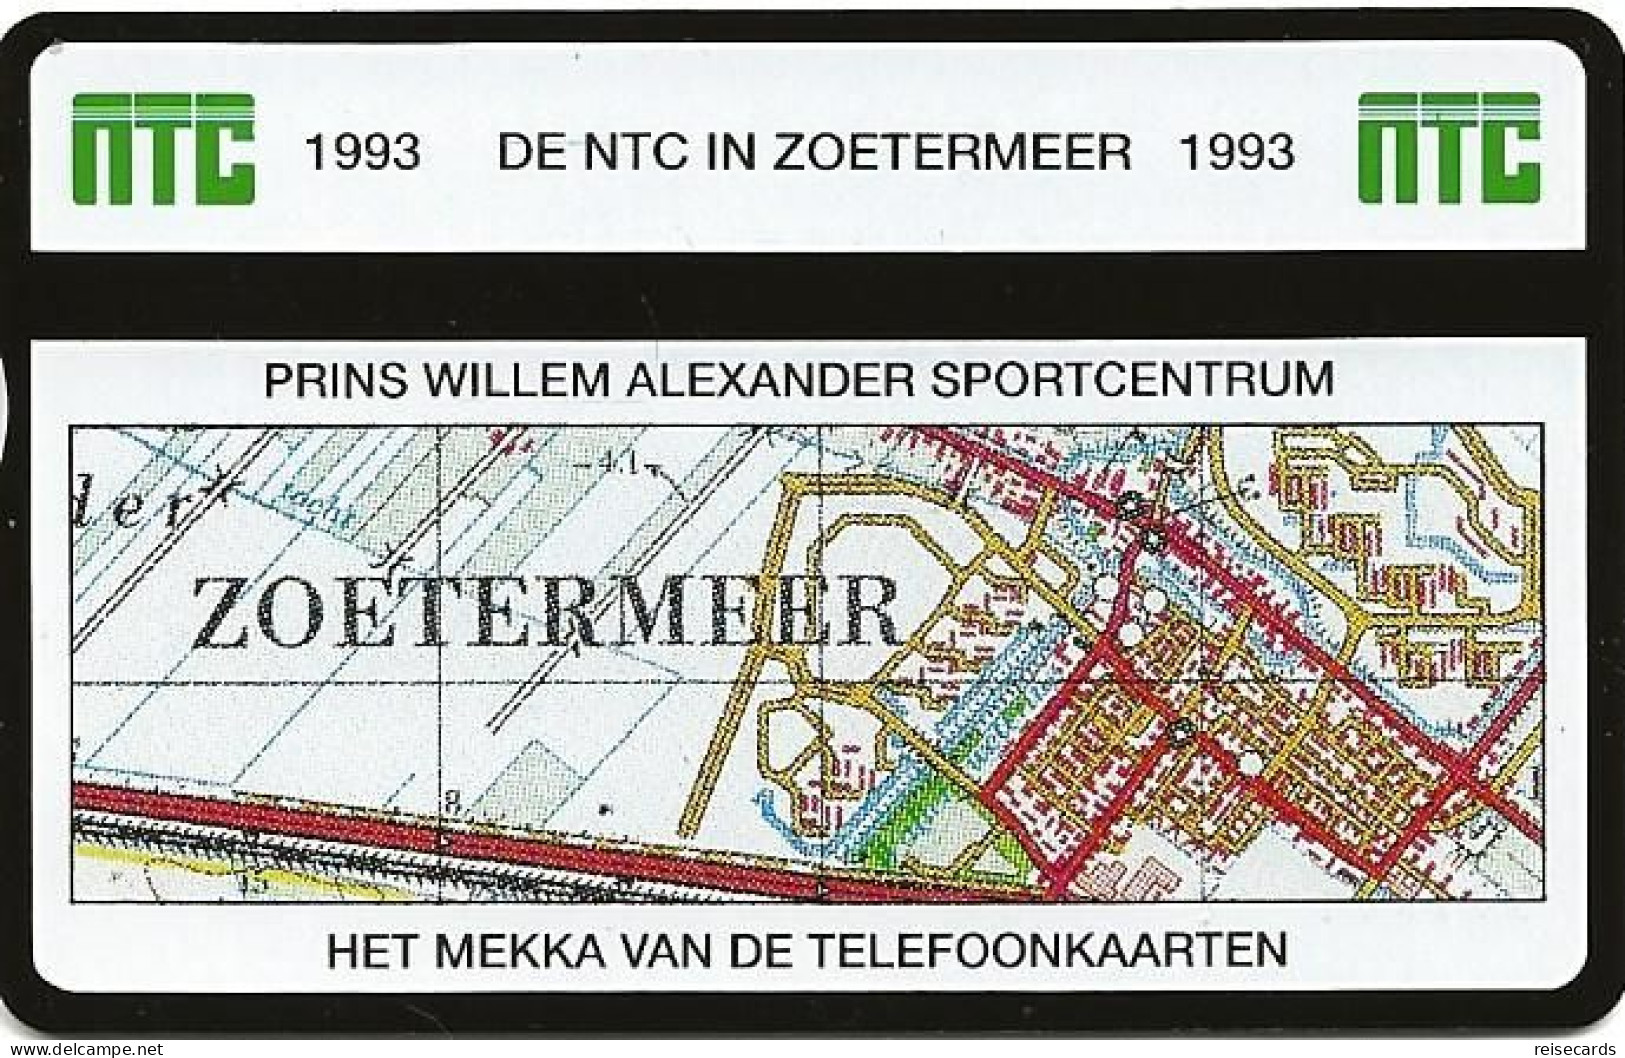 Netherlands: Ptt Telecom - 1993 301K NTC Telefoonkaarten Exhibition Zoetermeer 93. Mint - Privat